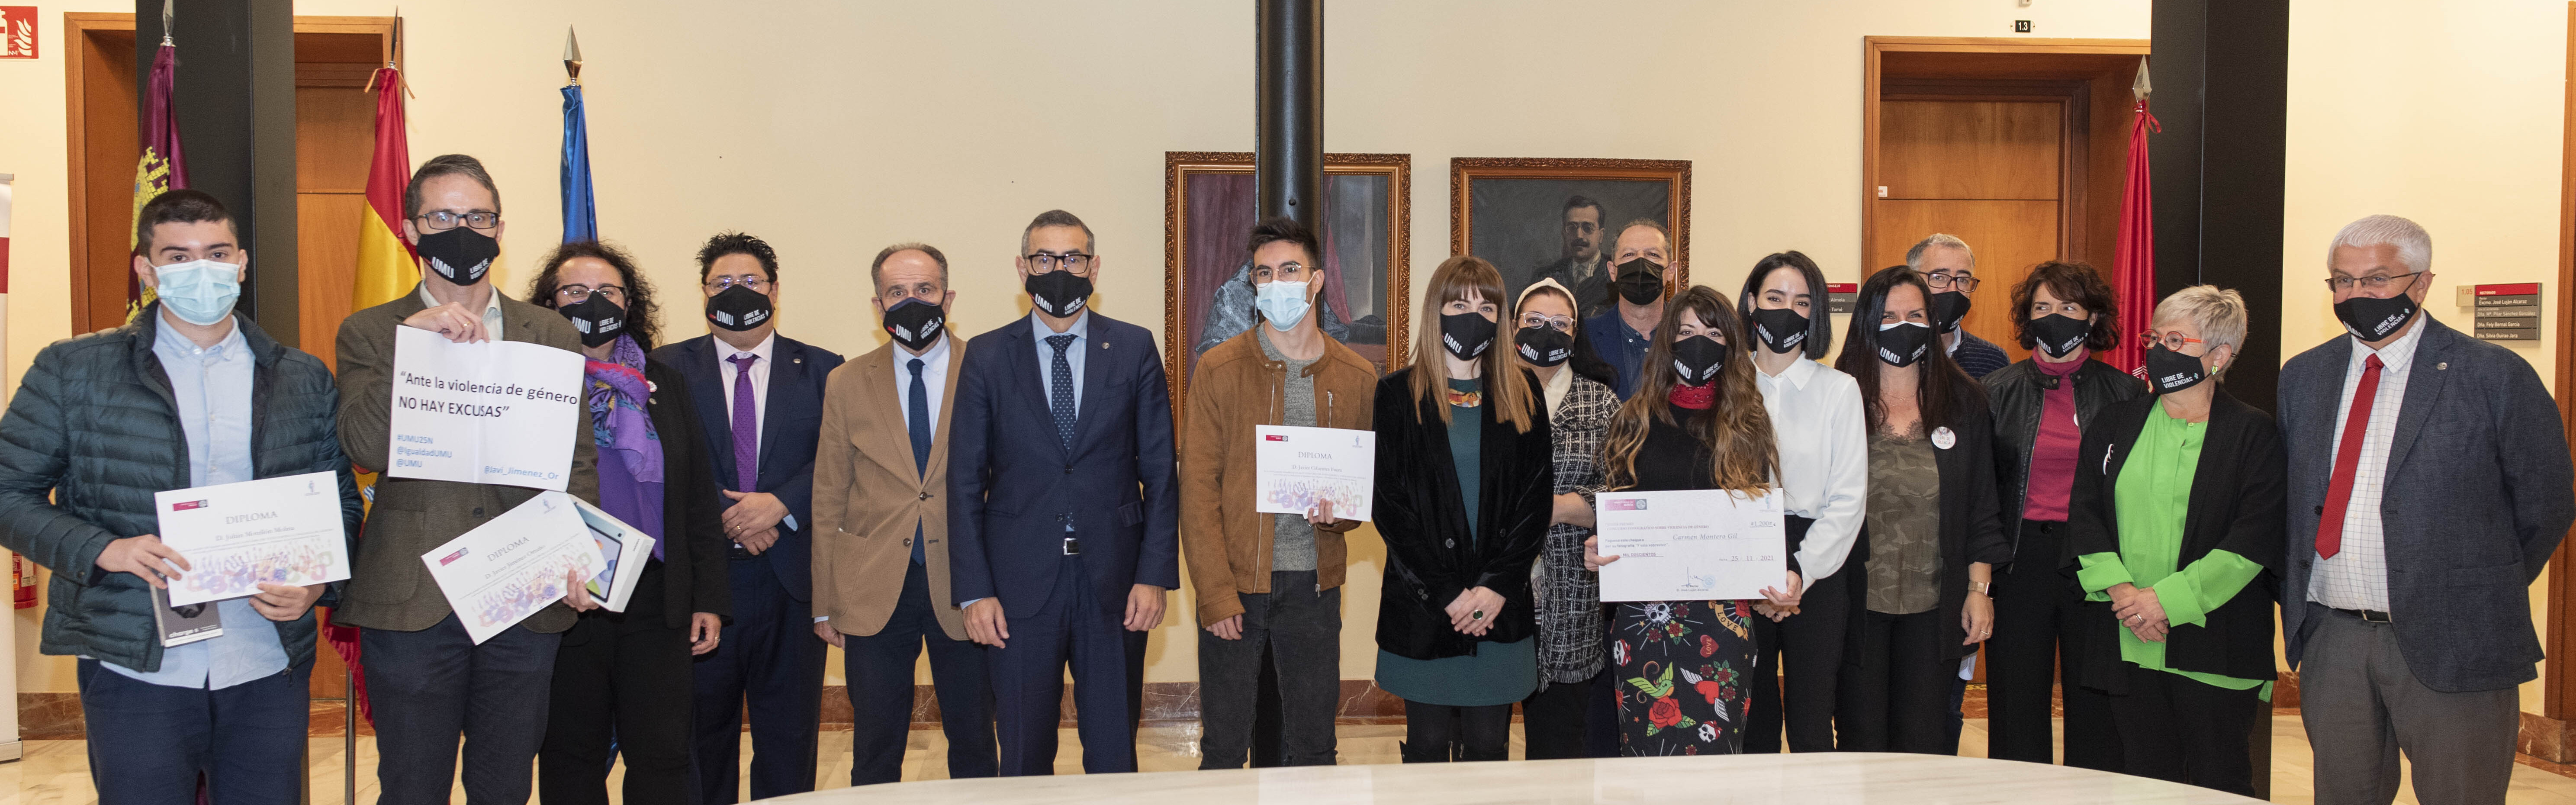 La Universidad de Murcia conmemora el Día Internacional para la Eliminación de la Violencia contra las Mujeres